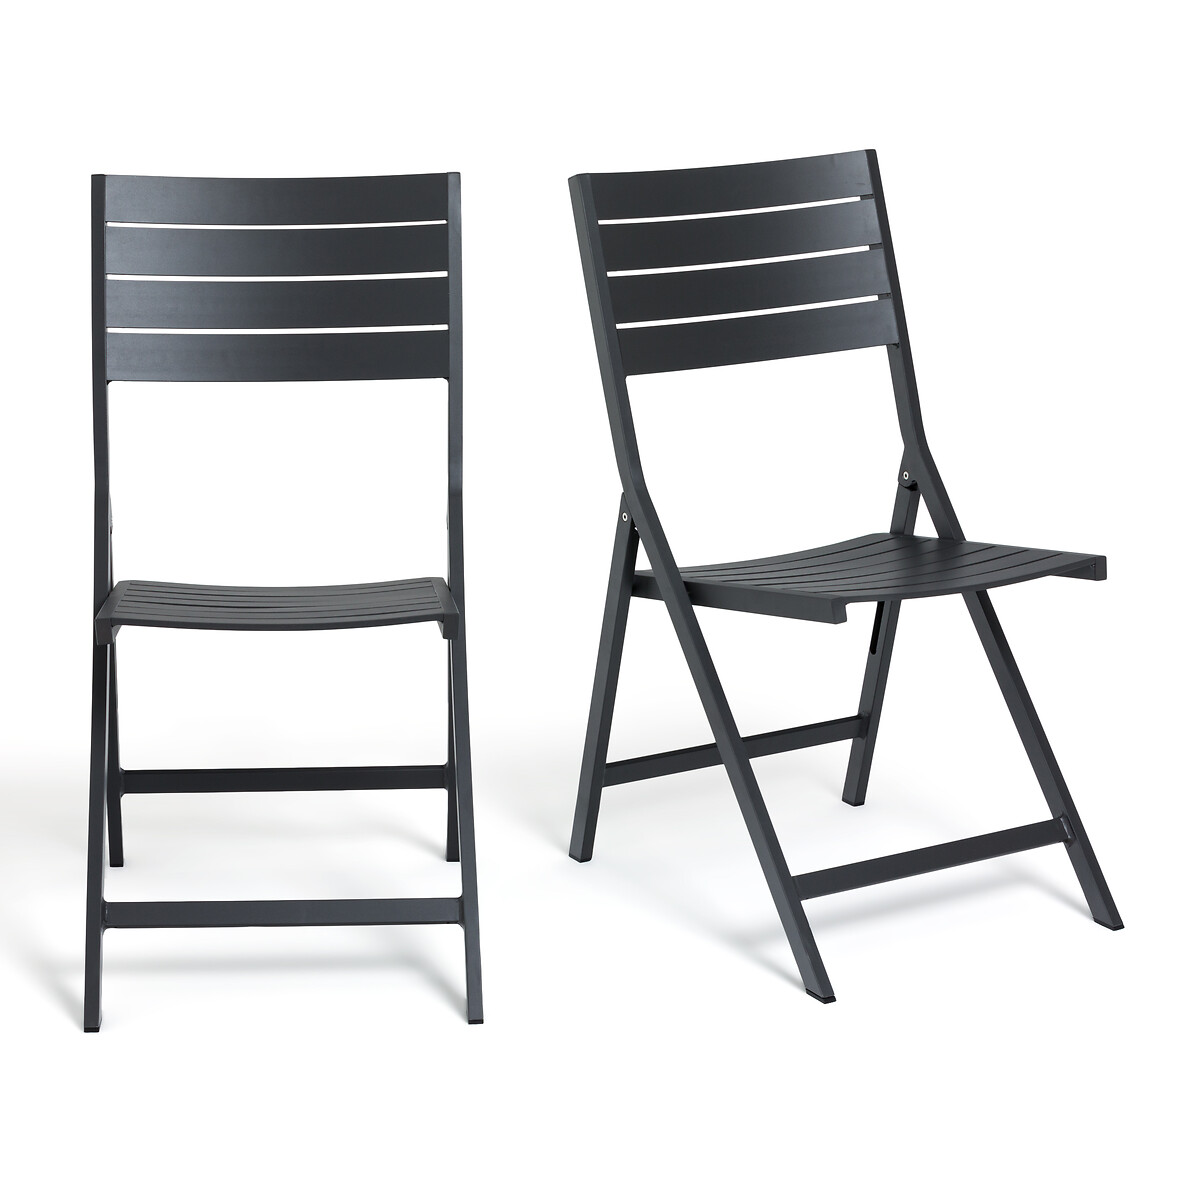 Комплект из 2 стульев из алюминия Zapy единый размер серый комплект из 2 стульев школьных сборных hiba единый размер черный